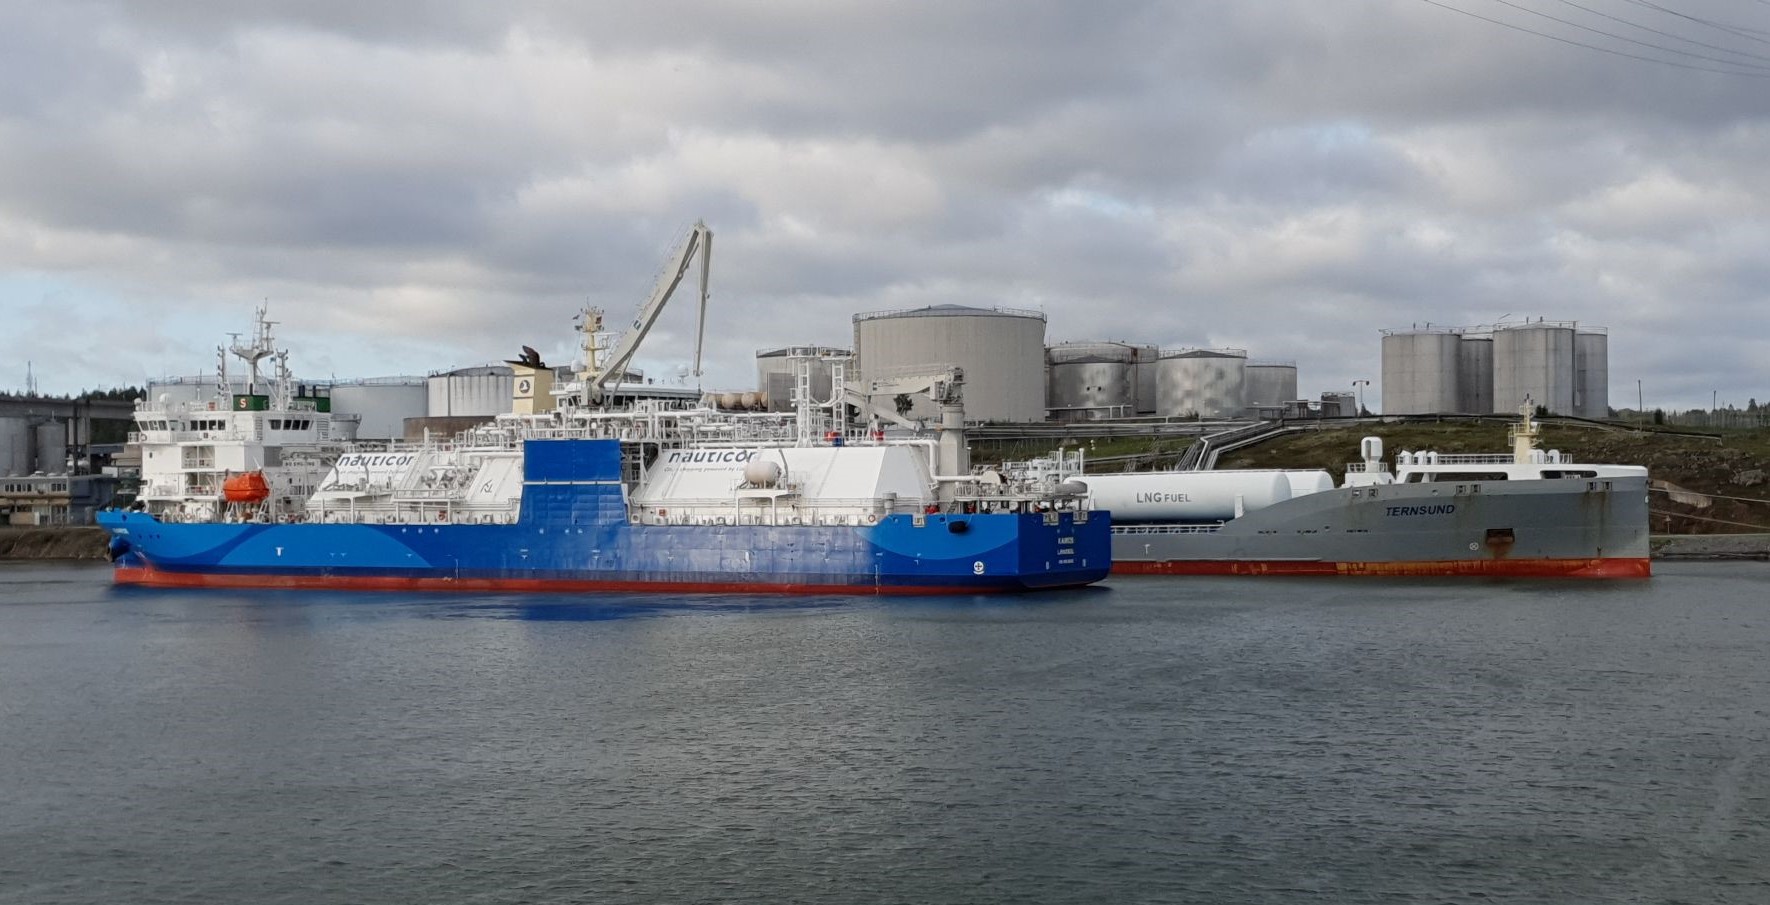 Kairos completes first LNG bunkering in port of Södertälje